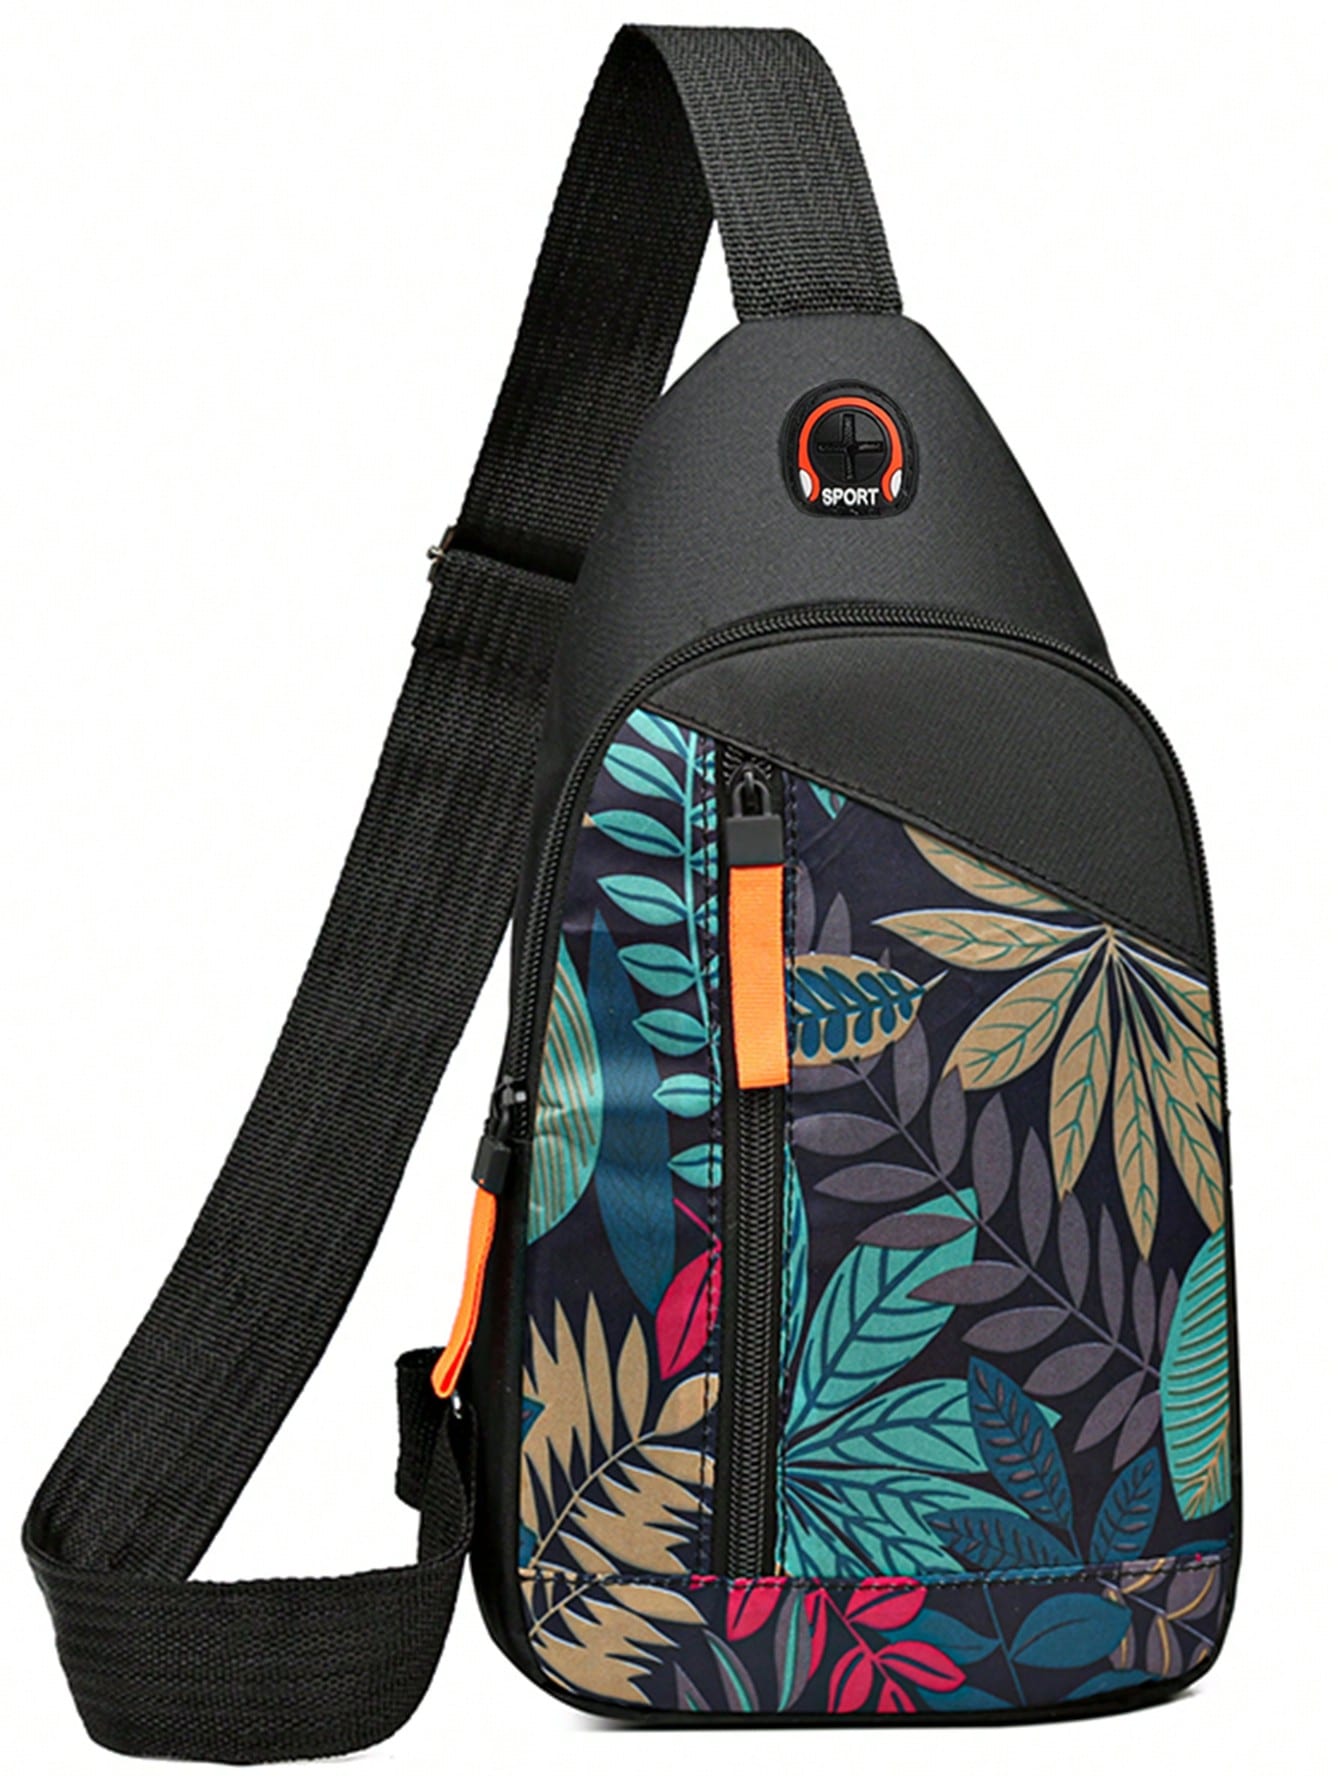 мужская нагрудная сумка через плечо вместительная сумка через плечо для пешего туризма кемпинга Нагрудная сумка, многоцветный